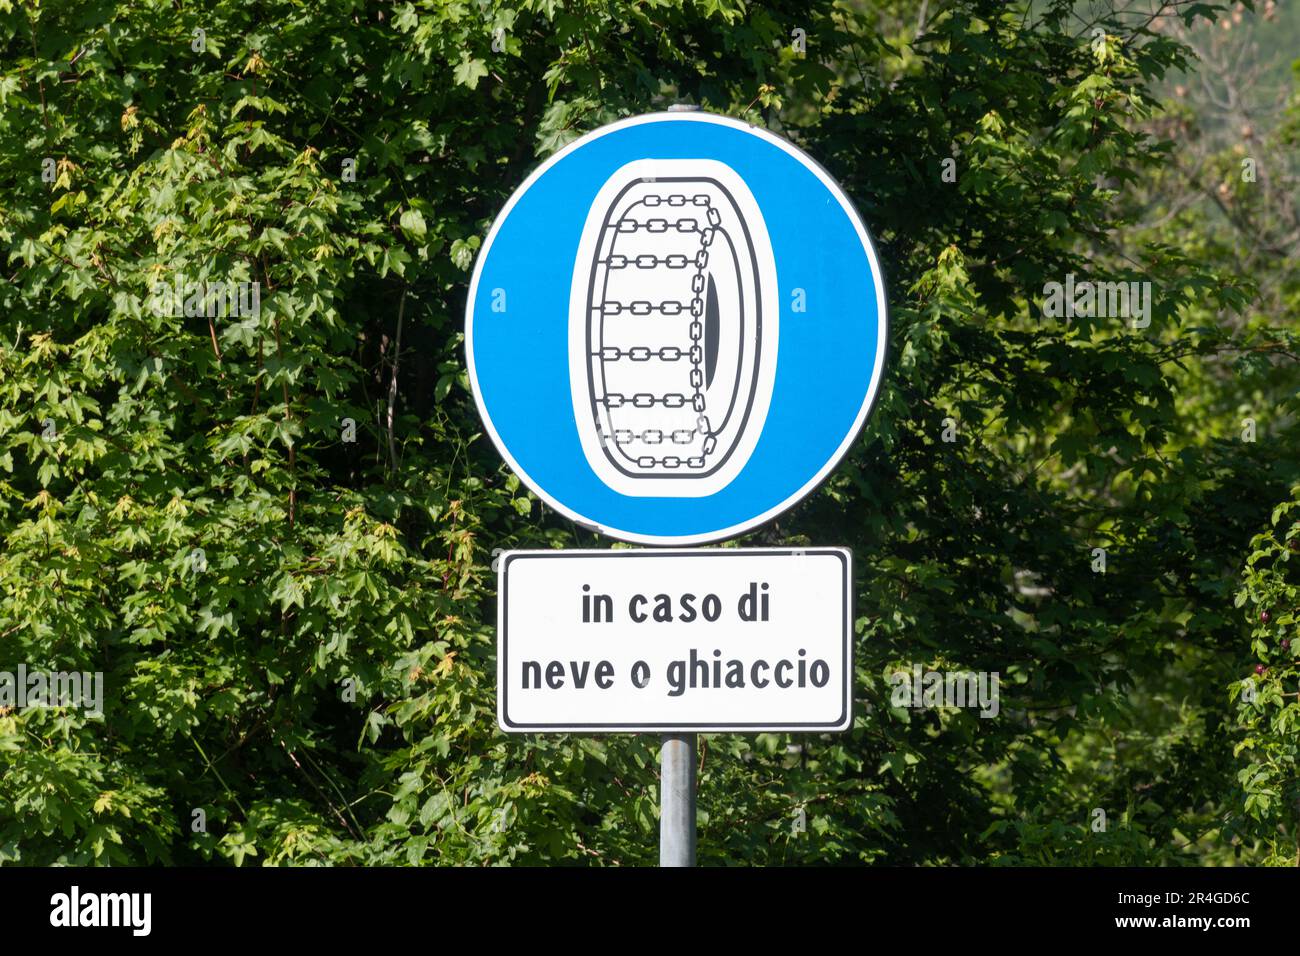 Segnaletica stradale in Italia in Appennino che consiglia l'uso di catene su pneumatici in caso di neve o ghiaccio sulle strade, Europa Foto Stock